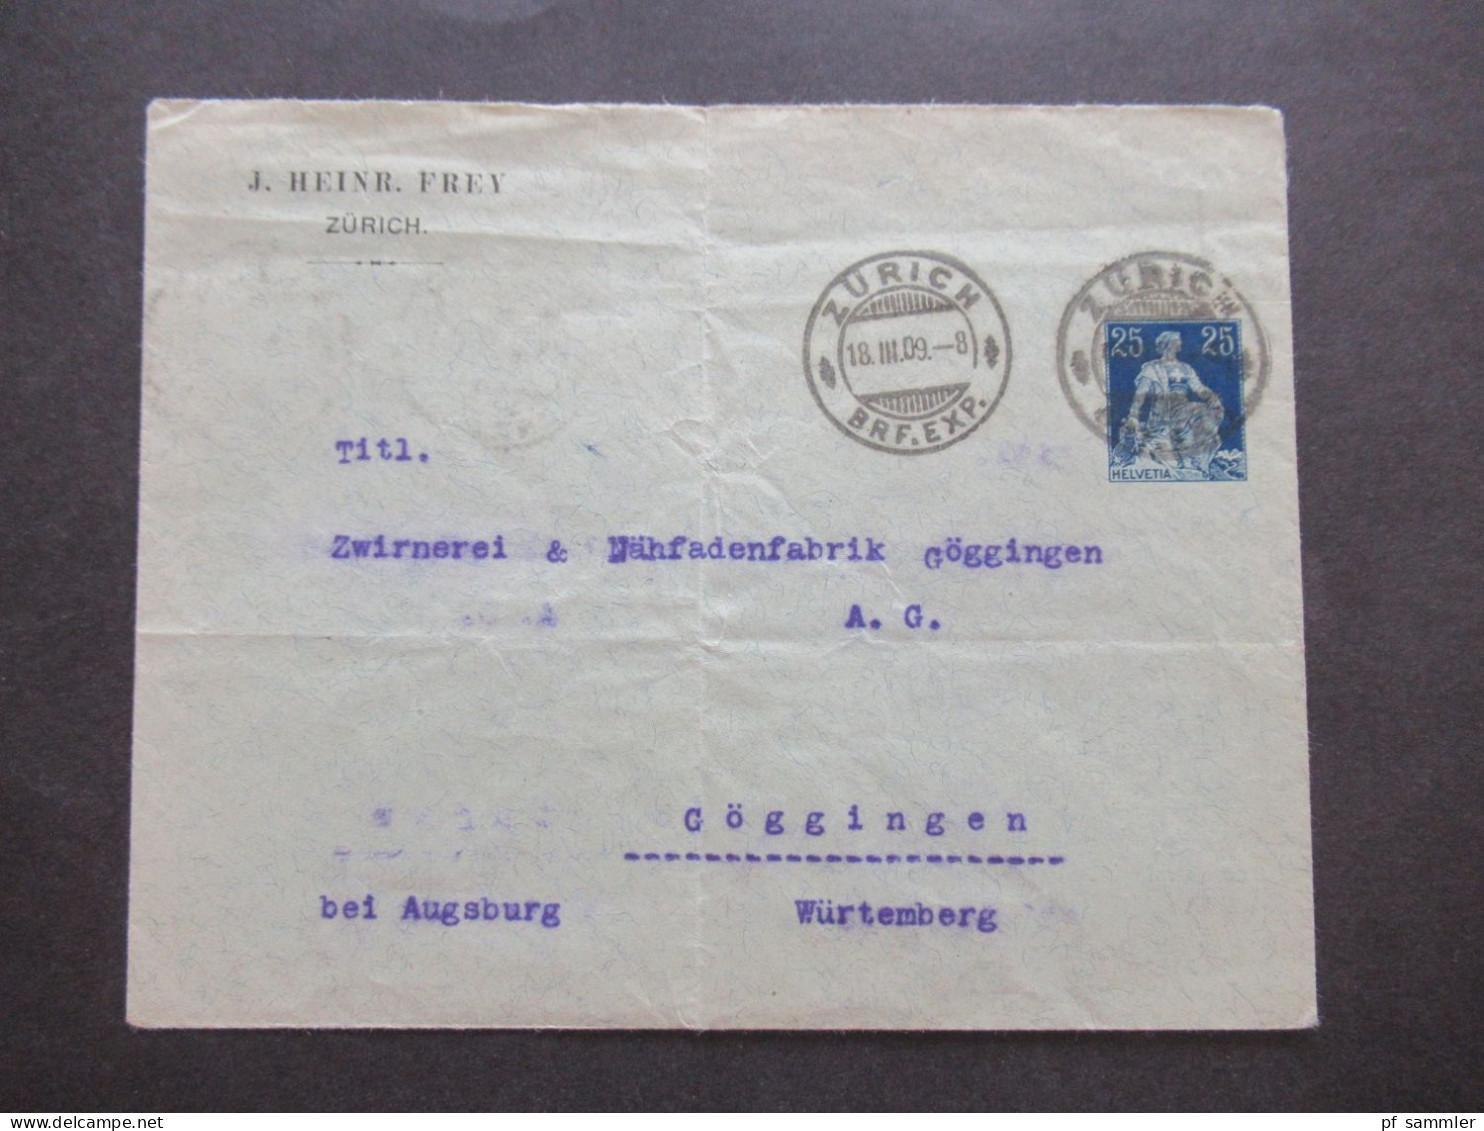 Schweiz 1909 Ganzsachen Umschlag Mit Abs. Zudruck J. Heinr. Frey Zürich Nach Göggingen Württemberg Gesendet - Ganzsachen